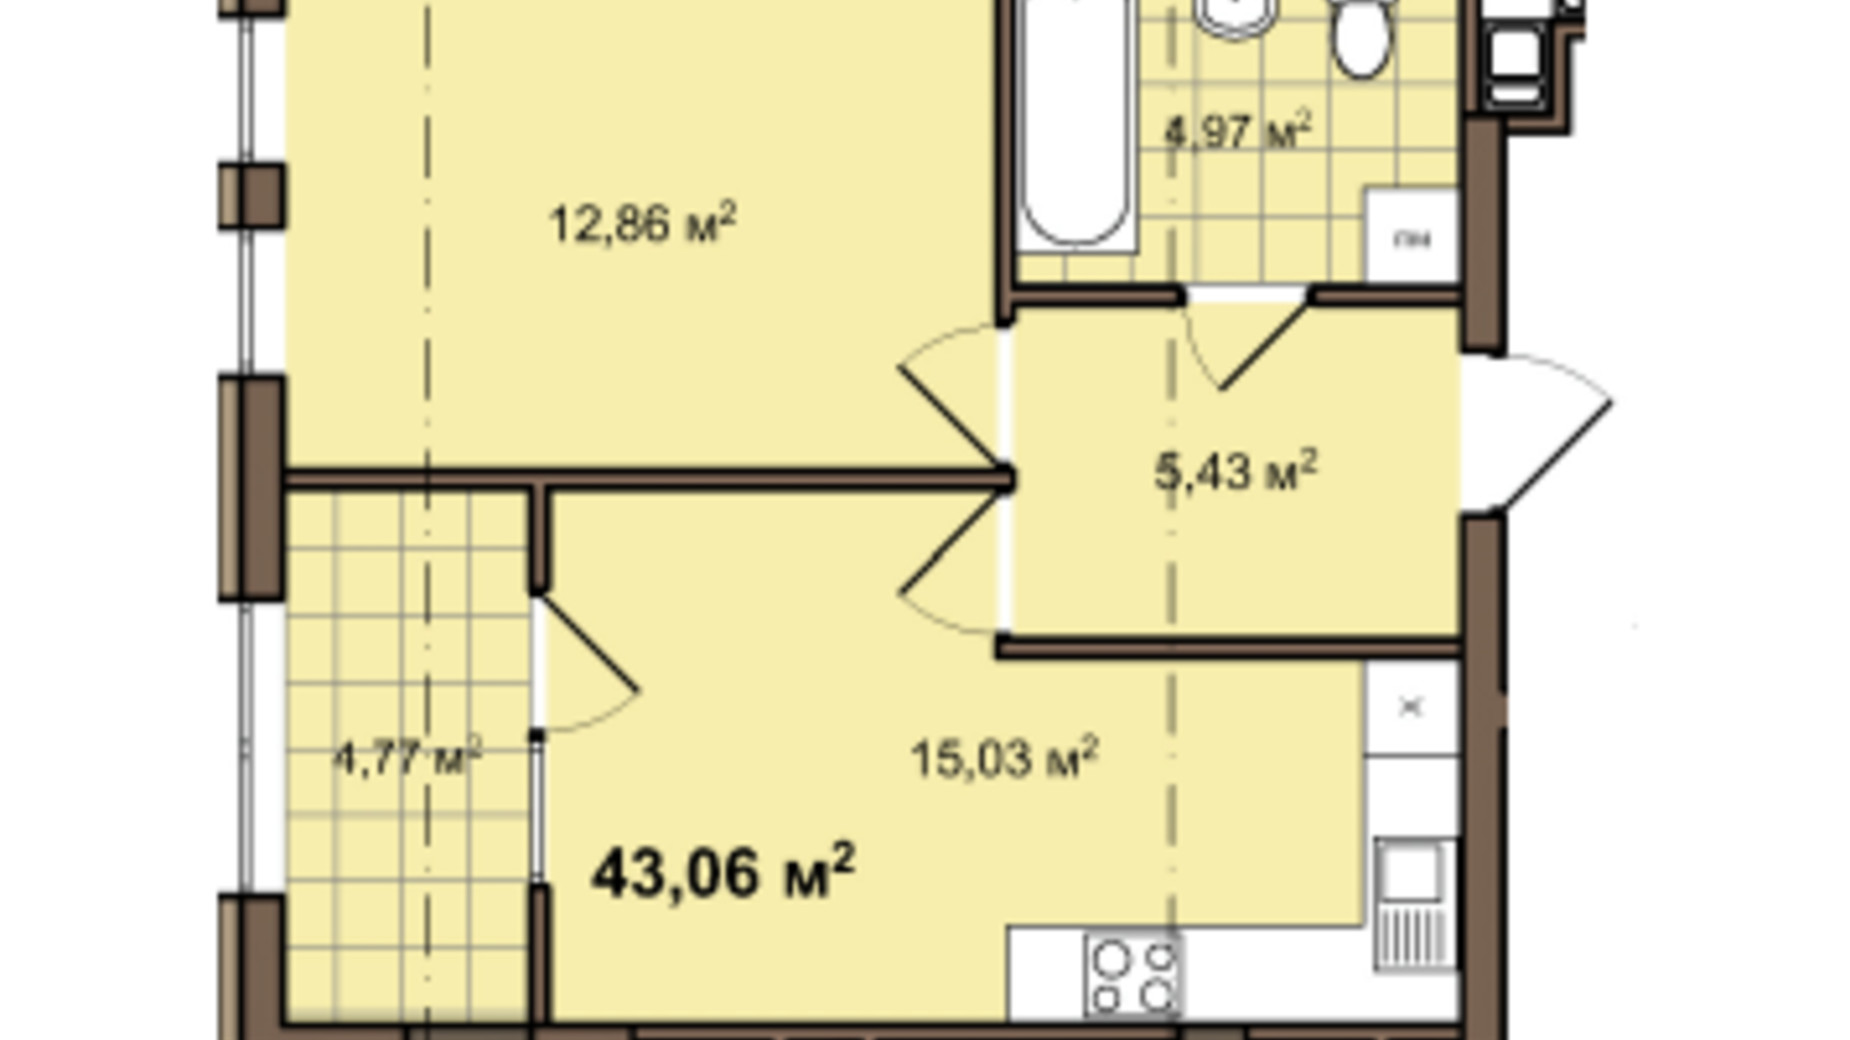 Планировка 1-комнатной квартиры в ЖК ул. Даниила Галицкого, 2А 43.06 м², фото 656501